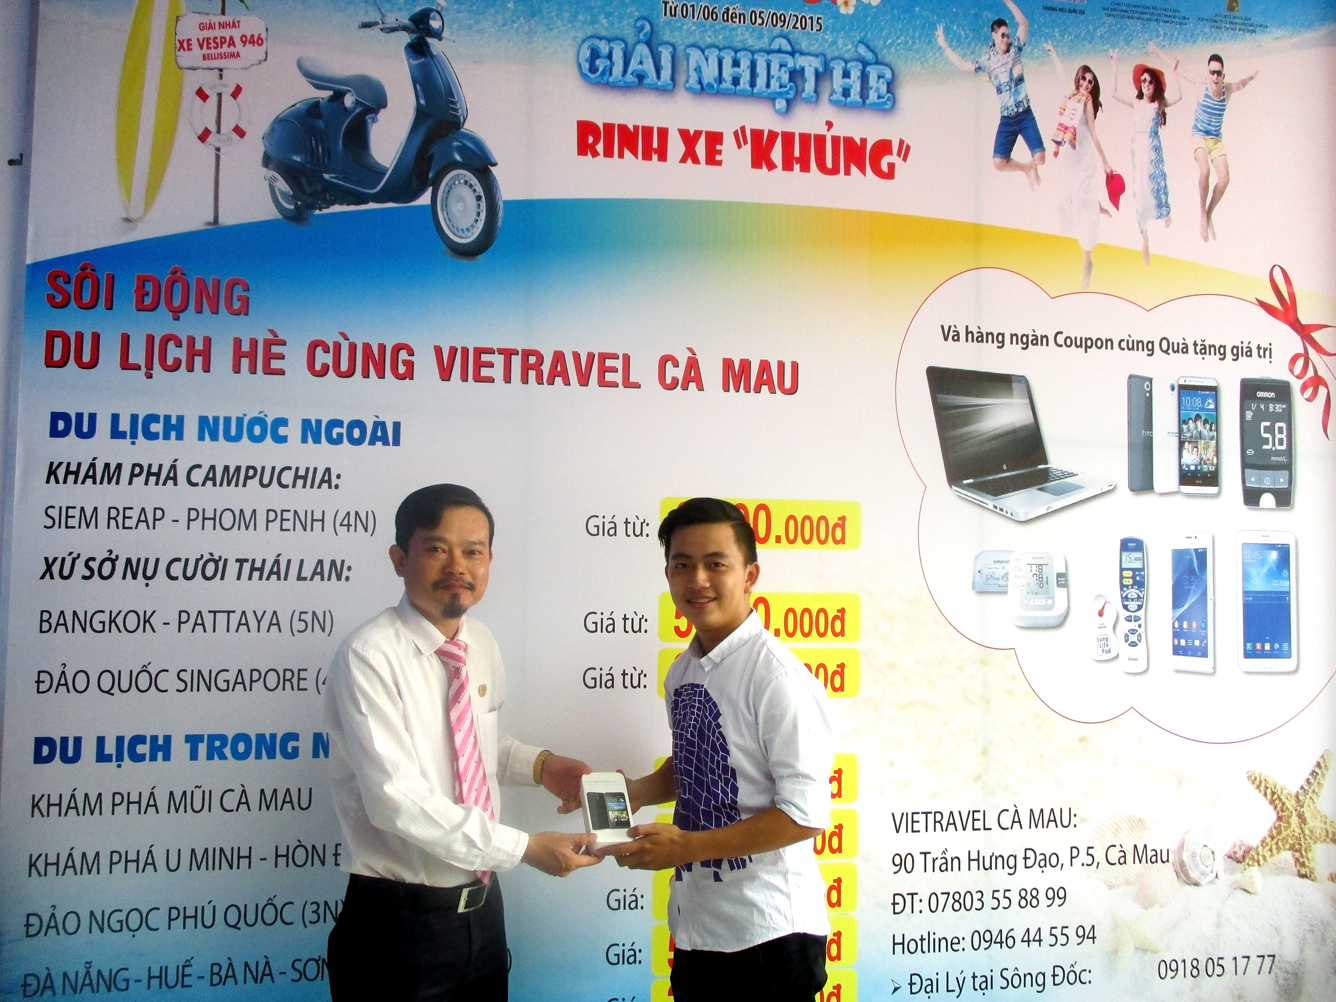 Vietravel Cà Mau trao thưởng cho khách hàng trúng giải tuần 2